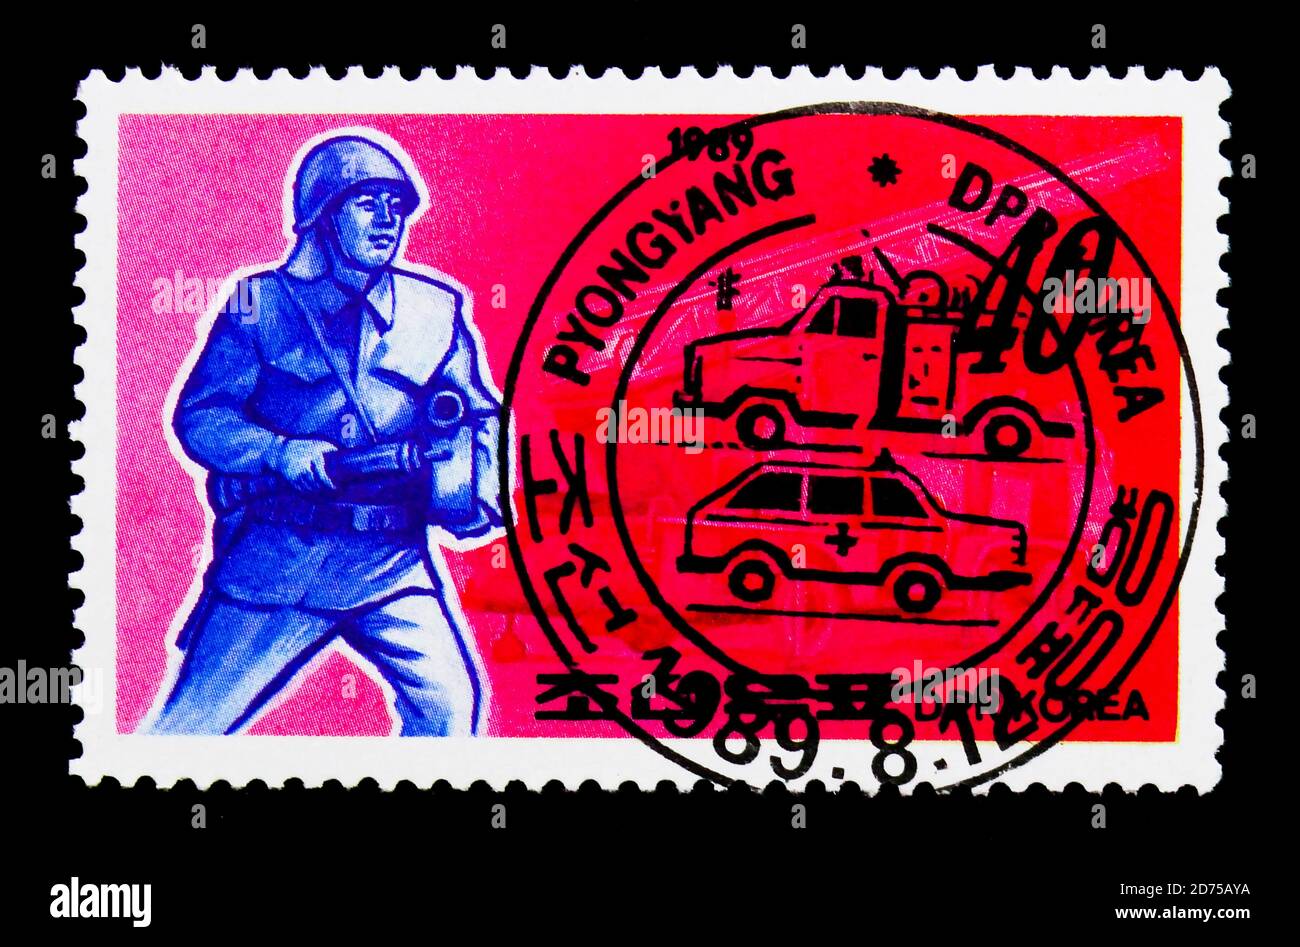 MOSCOU, RUSSIE - 25 NOVEMBRE 2017 : un timbre imprimé en république populaire démocratique de Corée montre le pompier et le pompier, série de services publics, cir Banque D'Images